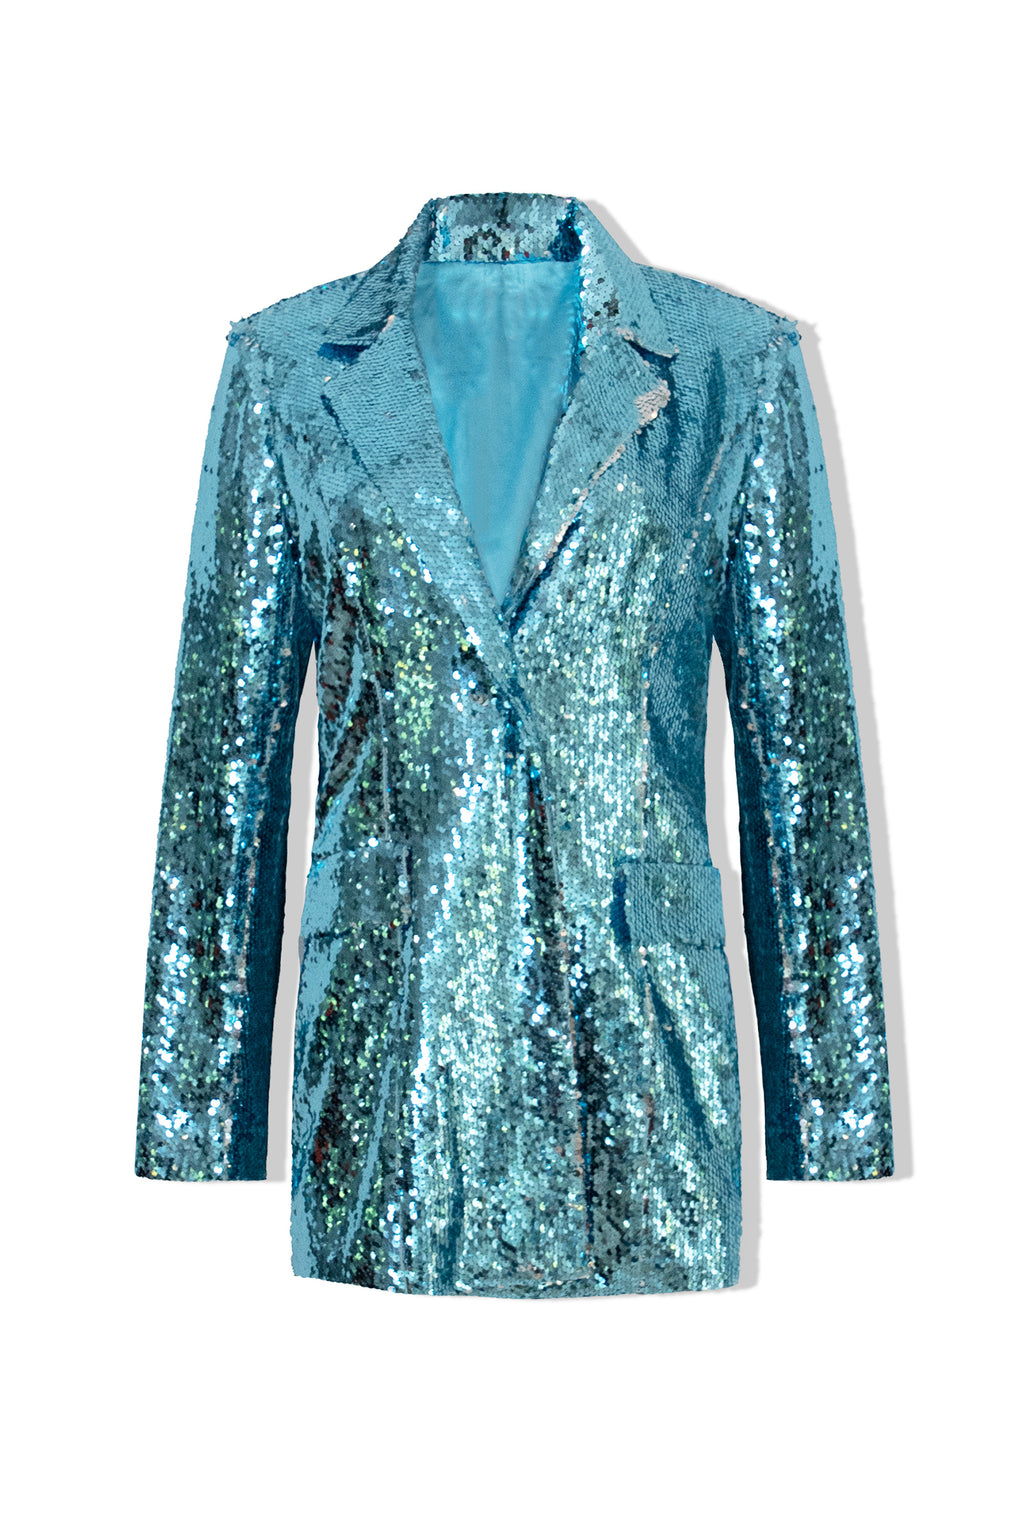 Ilona Rich Blue & Silver Sequin Single Breasted Blazer